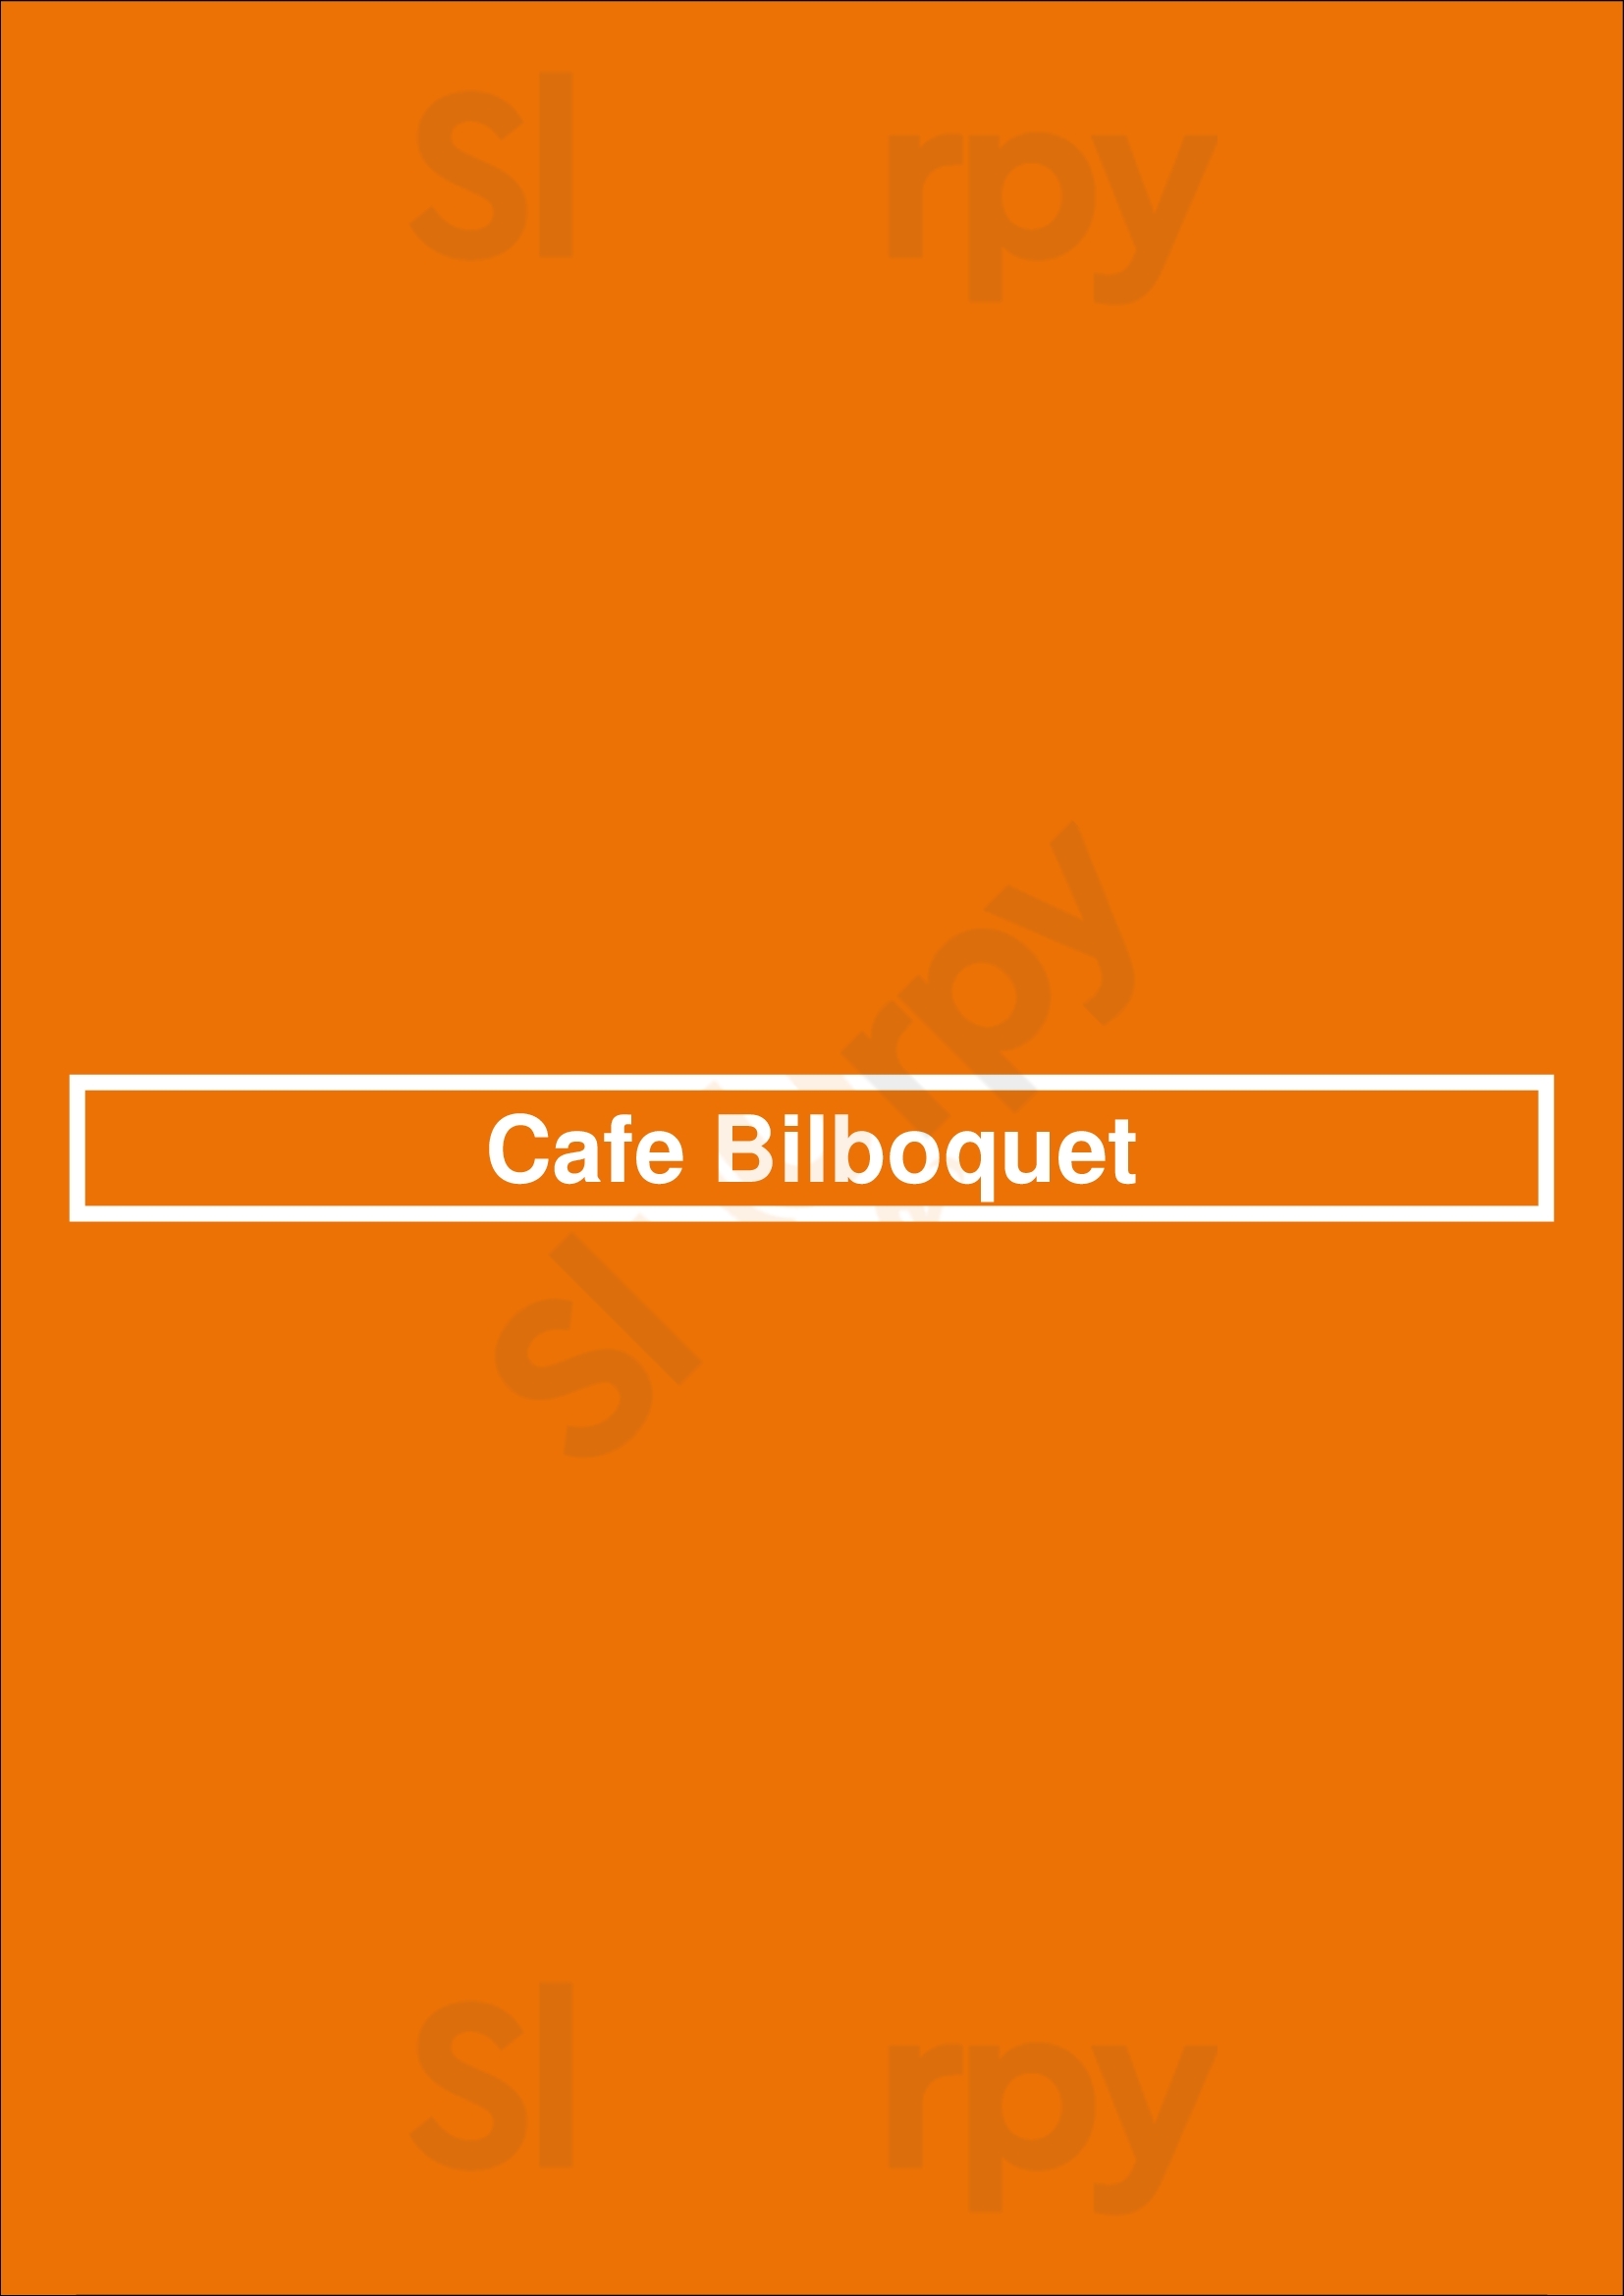 Cafe Bilboquet New York City Menu - 1